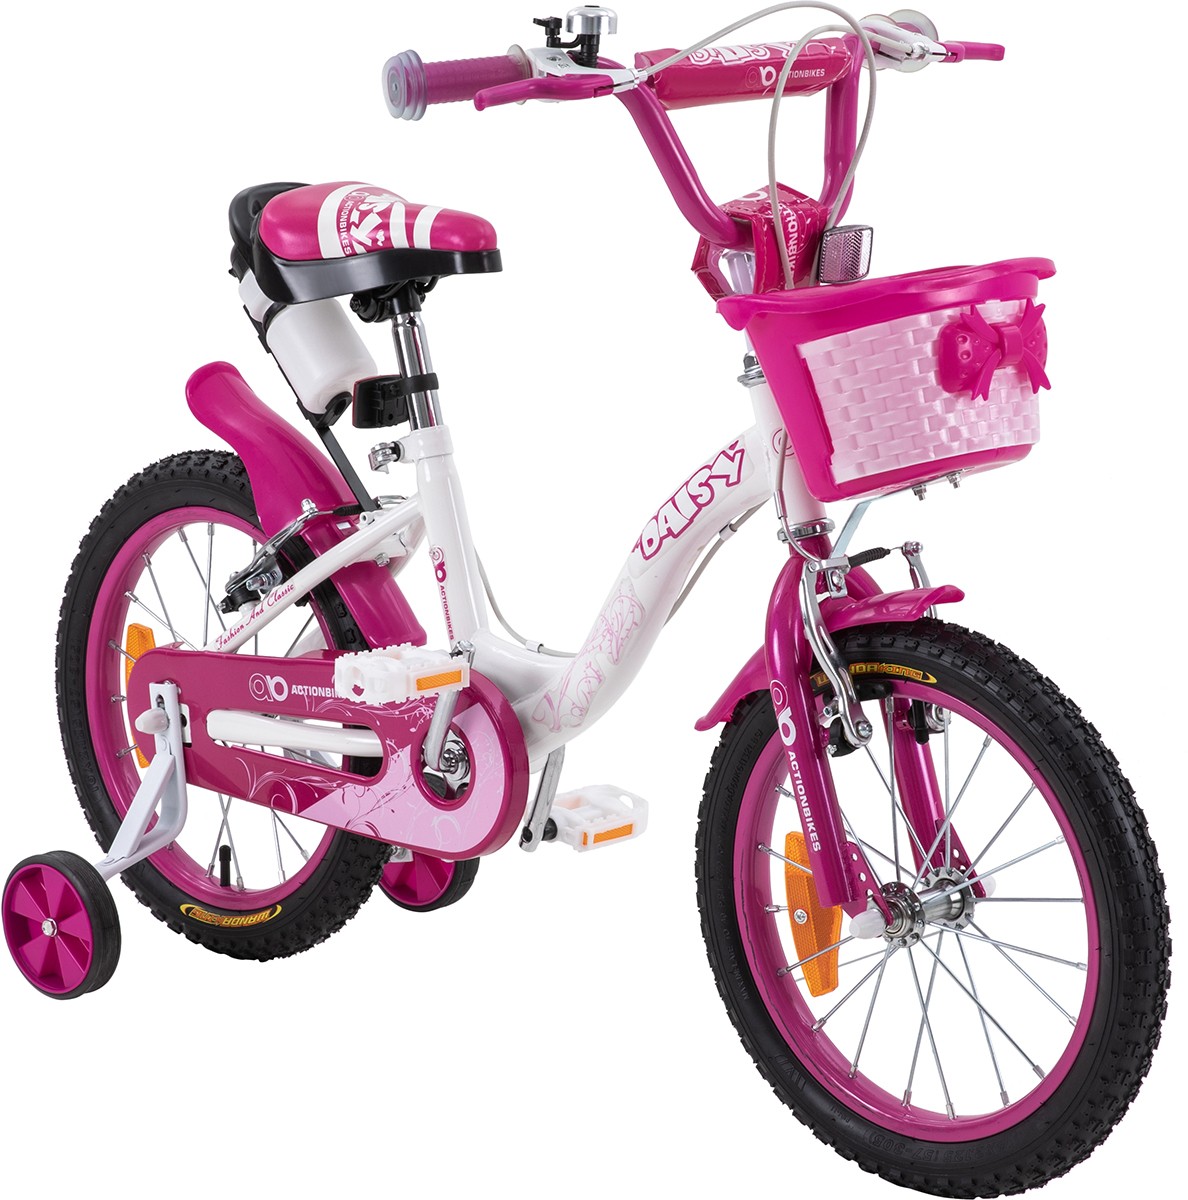 01-kinderfahrrad-16-zoll-pink-actionbikes-motors-daisy-startbild